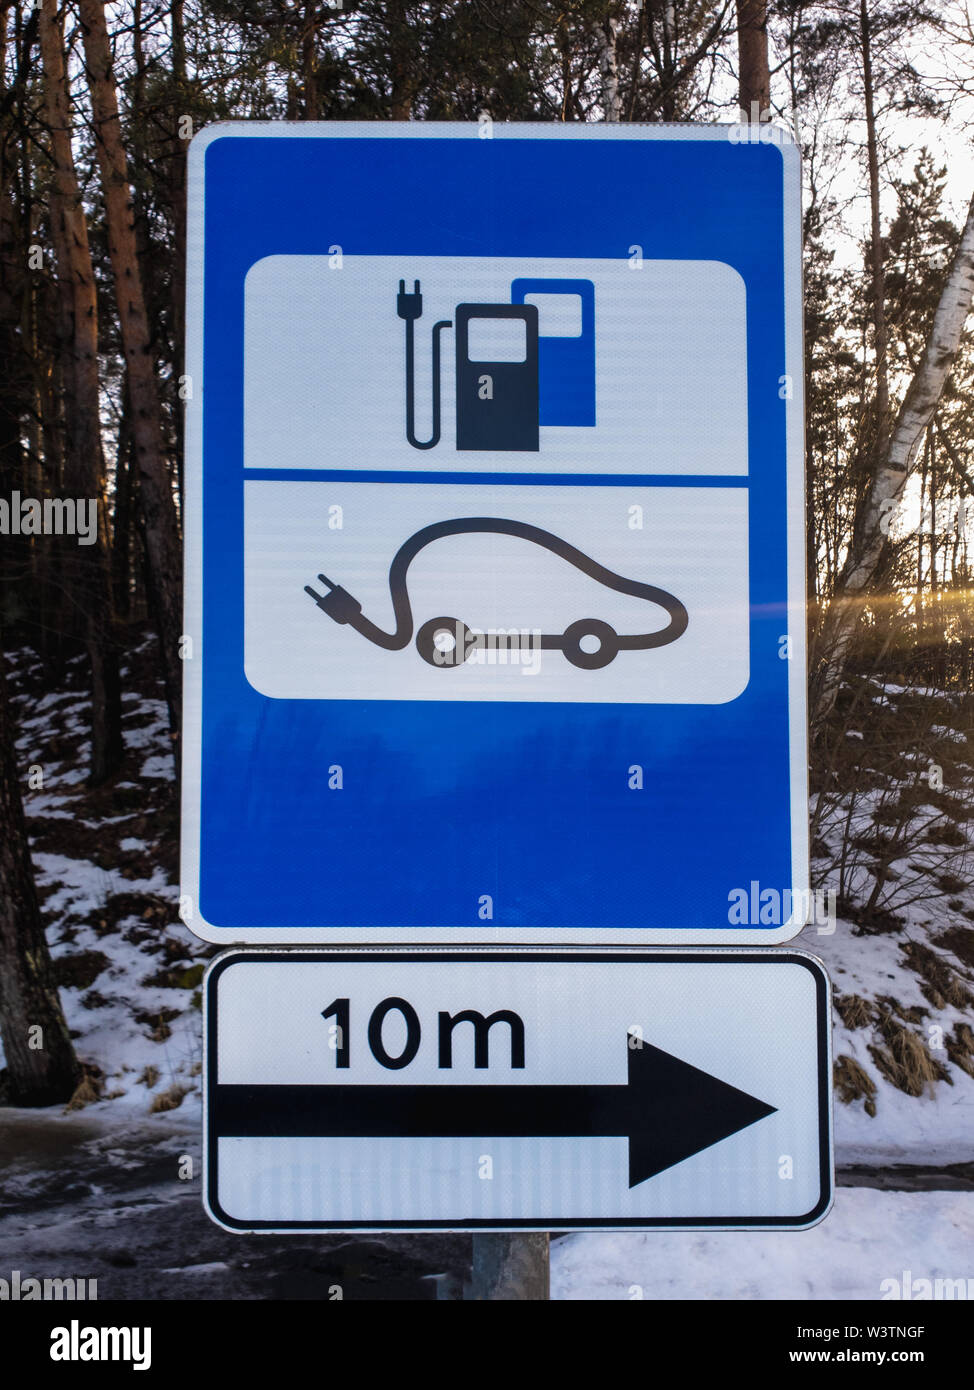 Signalisation pour station de charge de voiture électrique EV en hiver Banque D'Images